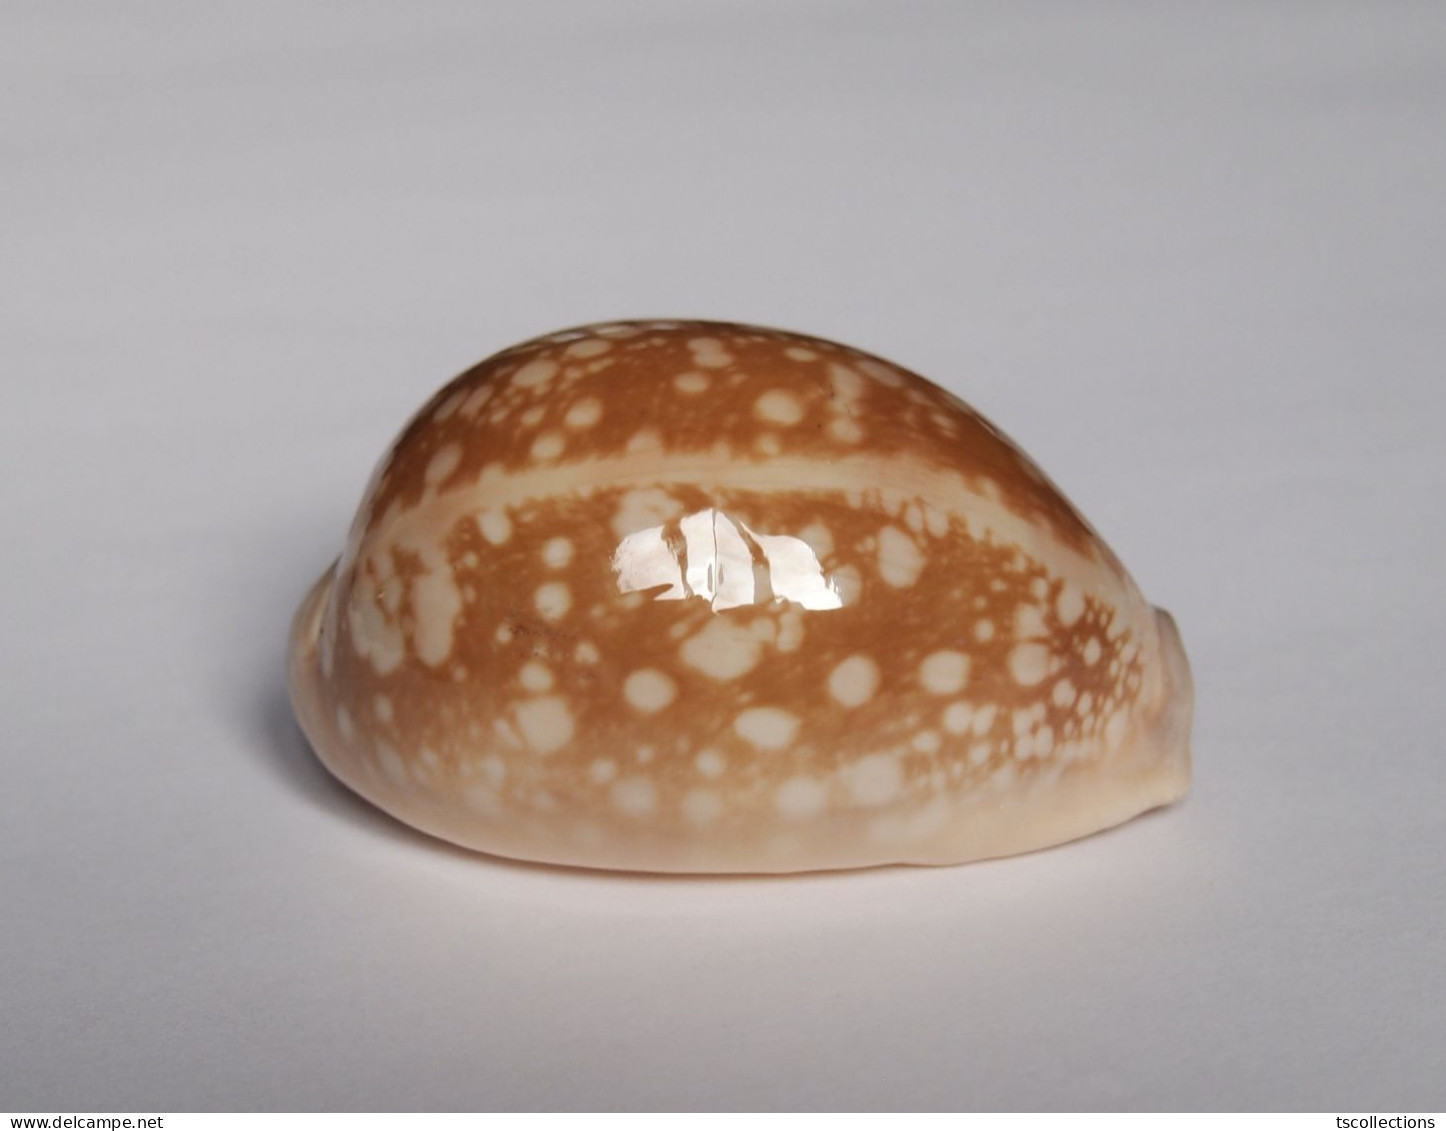 Cypraea Nivosa - Seashells & Snail-shells